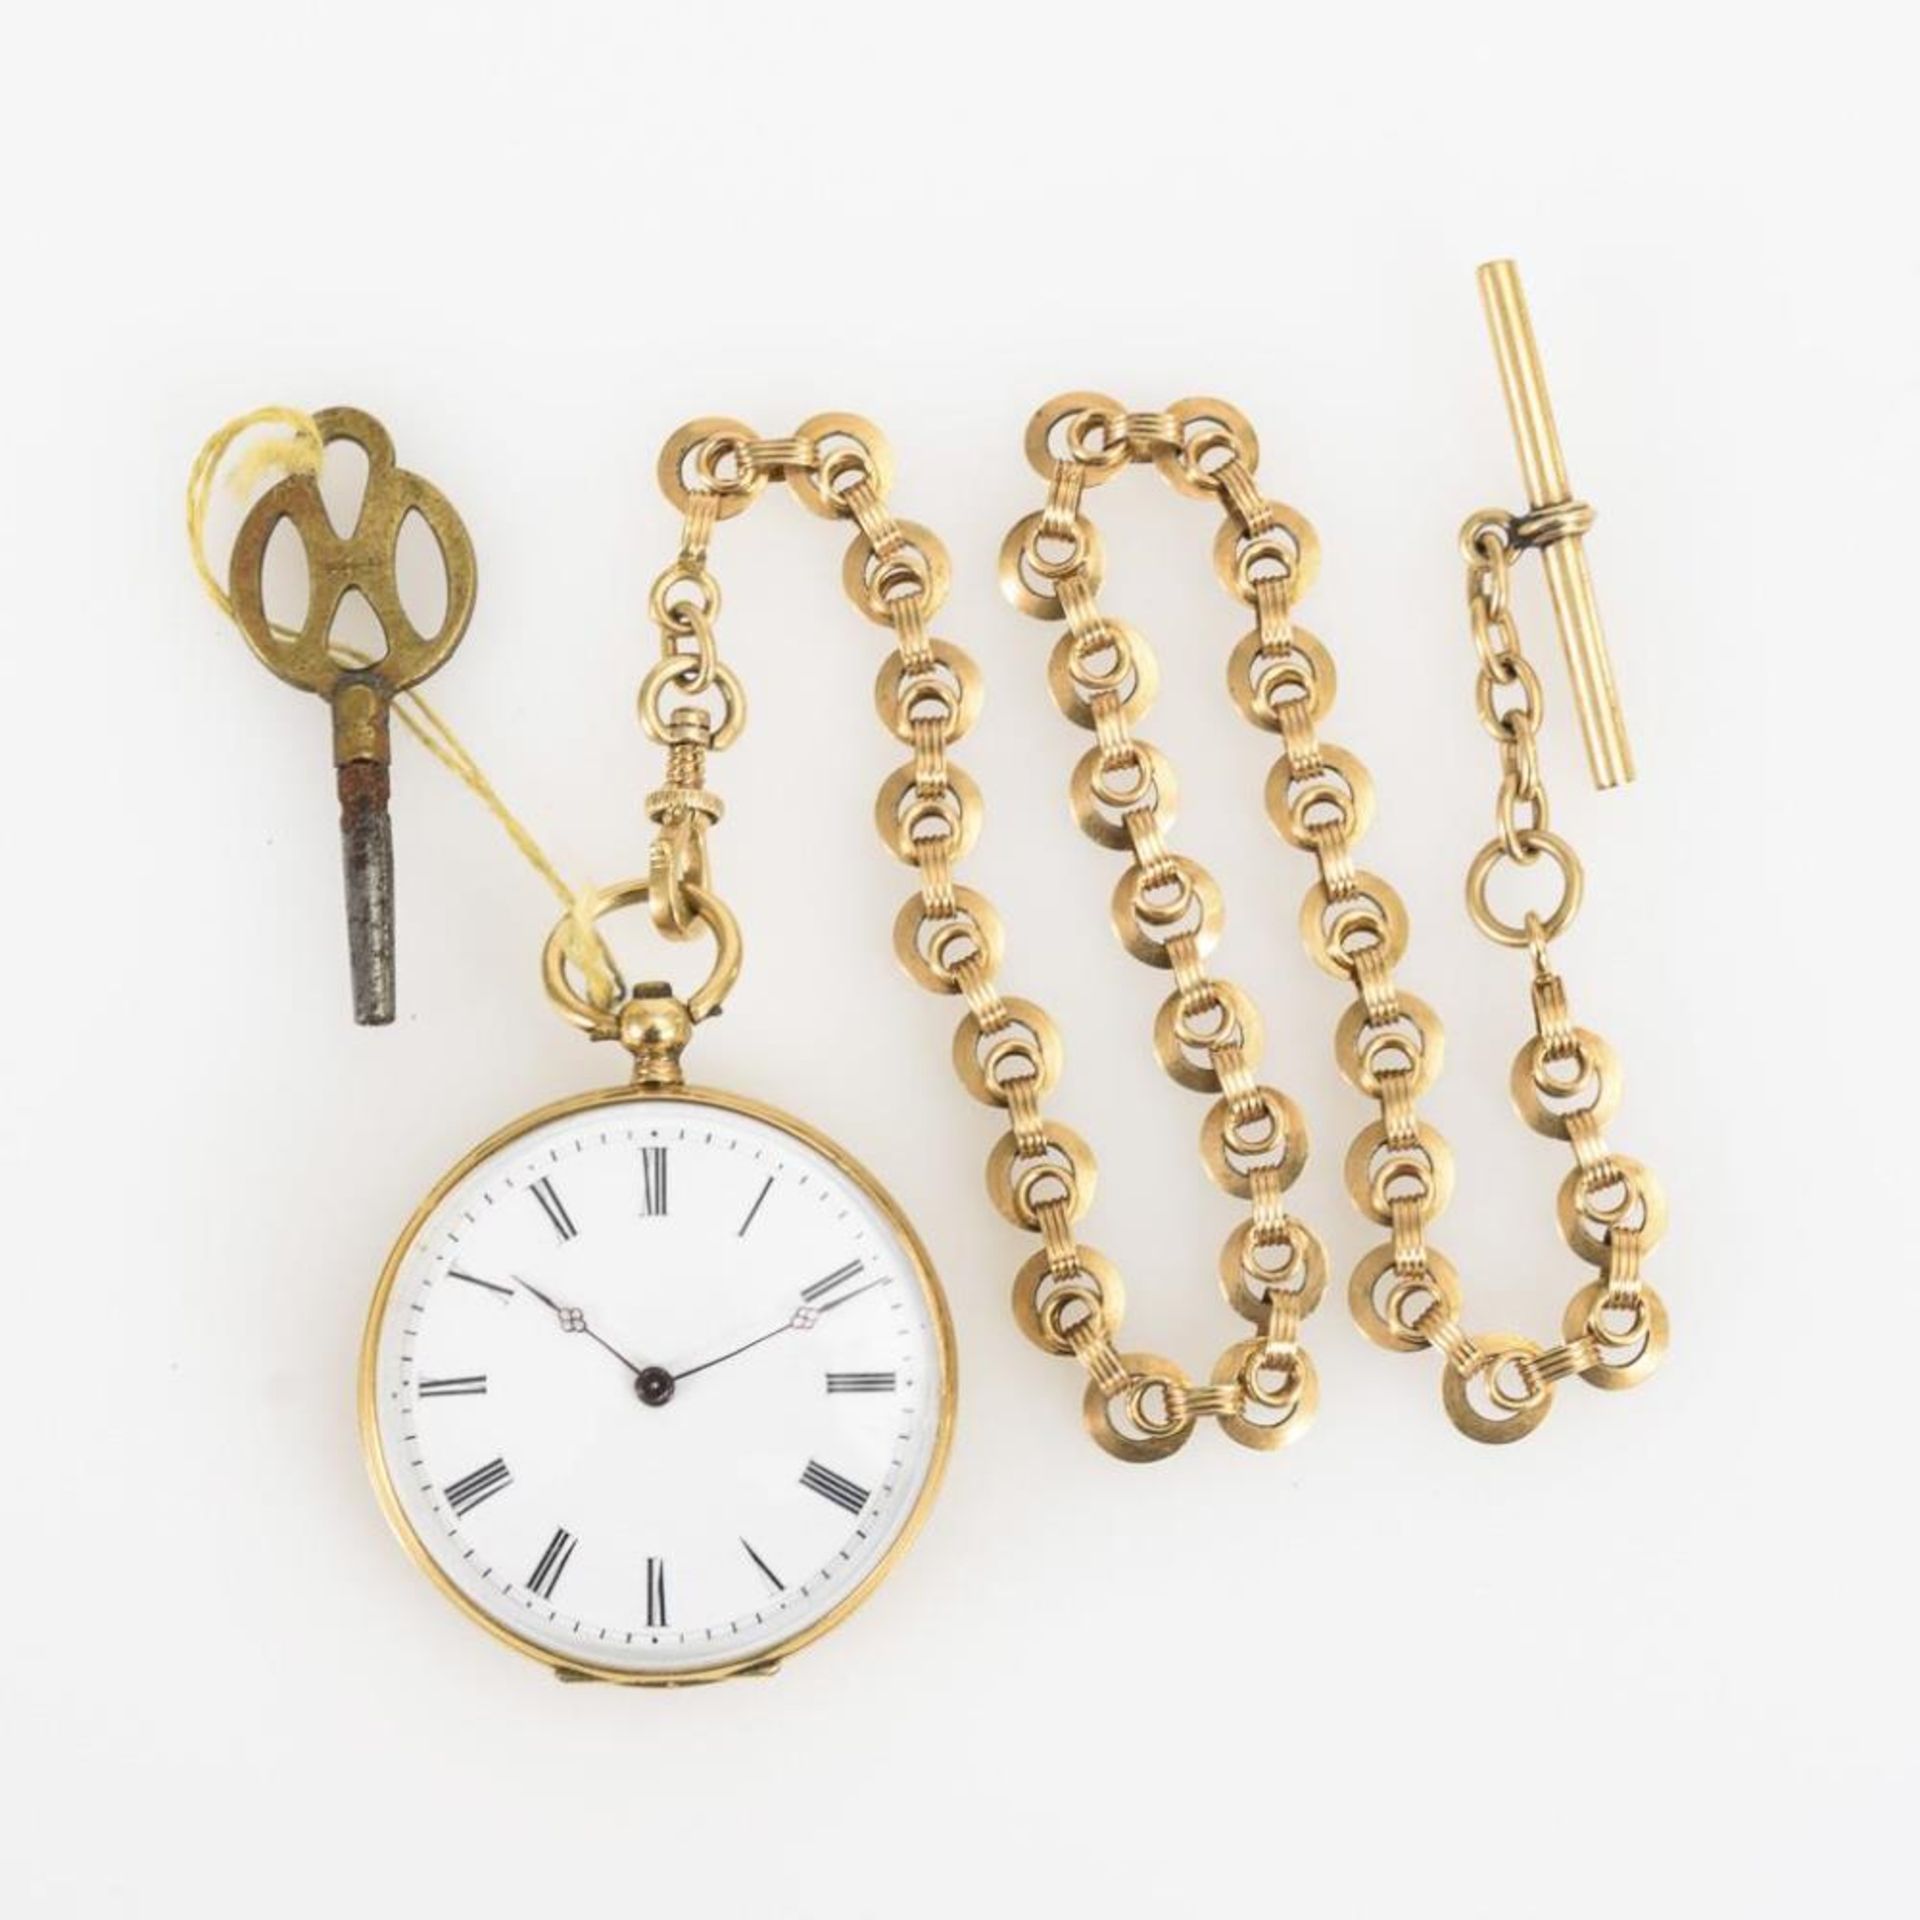 Goldene Damentaschenuhr an Uhrenkette. - Image 5 of 5